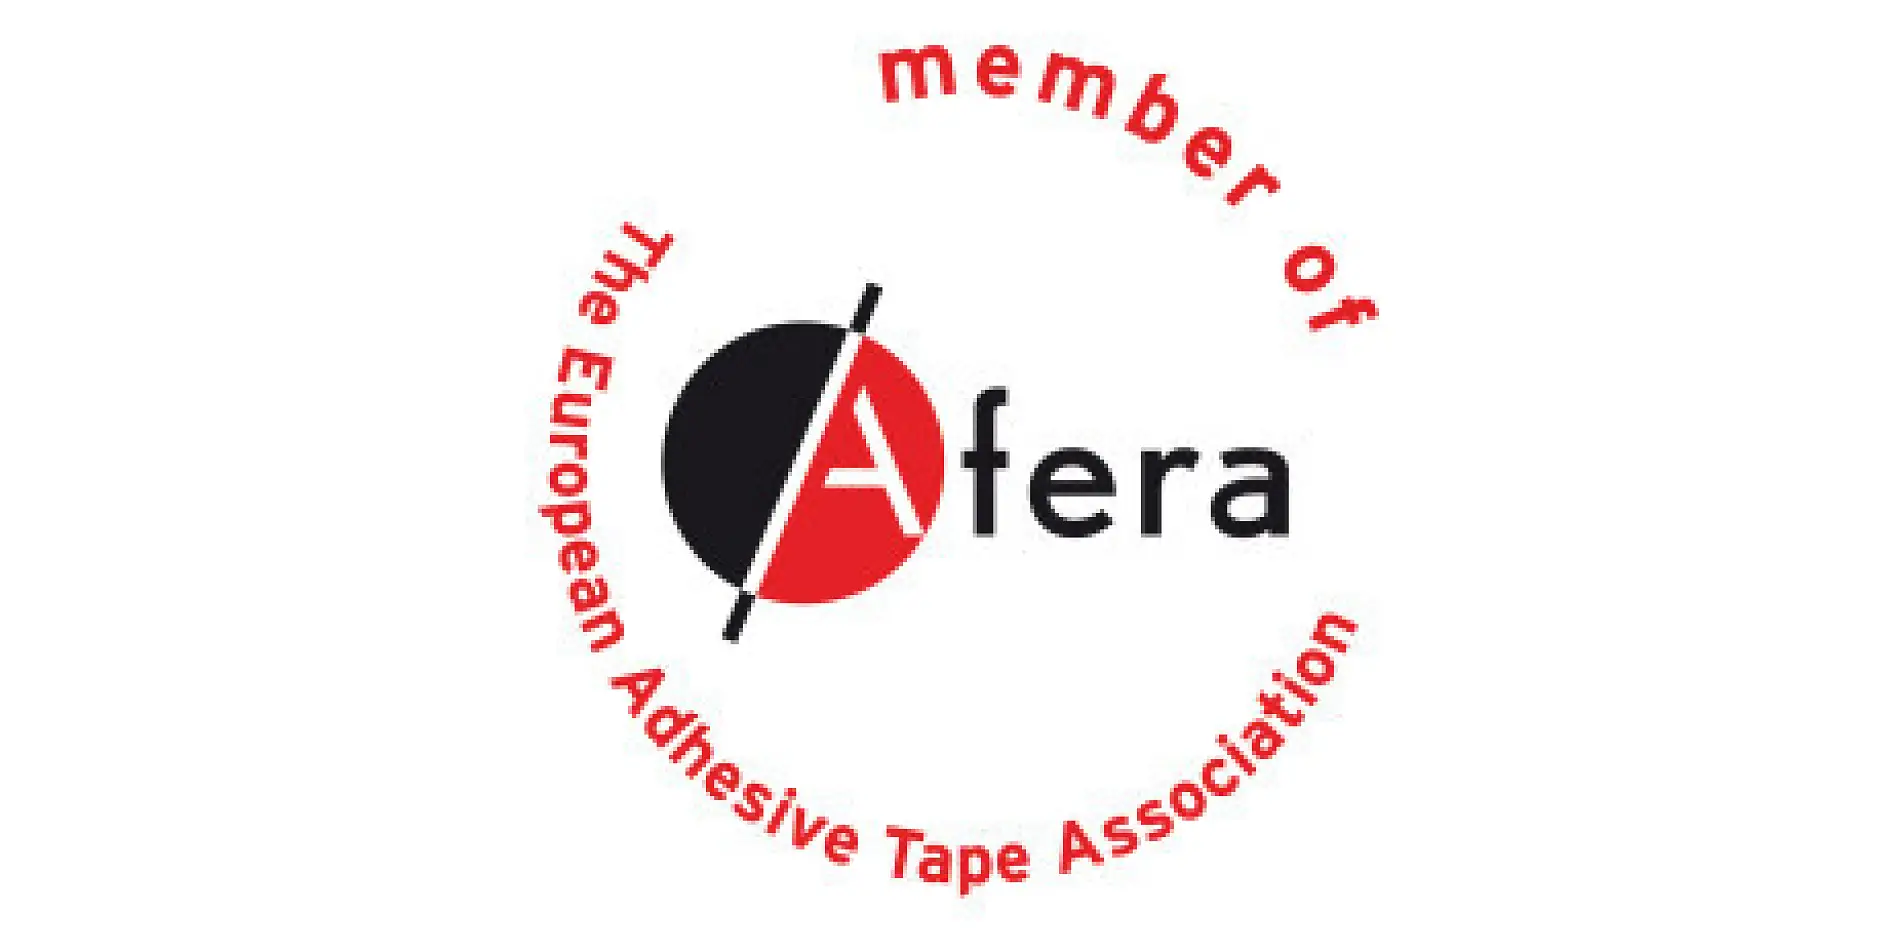 tesa är medlem i afera – European Adhesive Tape Association. Medlemskapet inkluderar tillverkare, råmaterial- och maskinleverantörer, konverterare (såsom skrivare, skärare, stansare och laminerare av tejp) och nationella tejporganisationer.